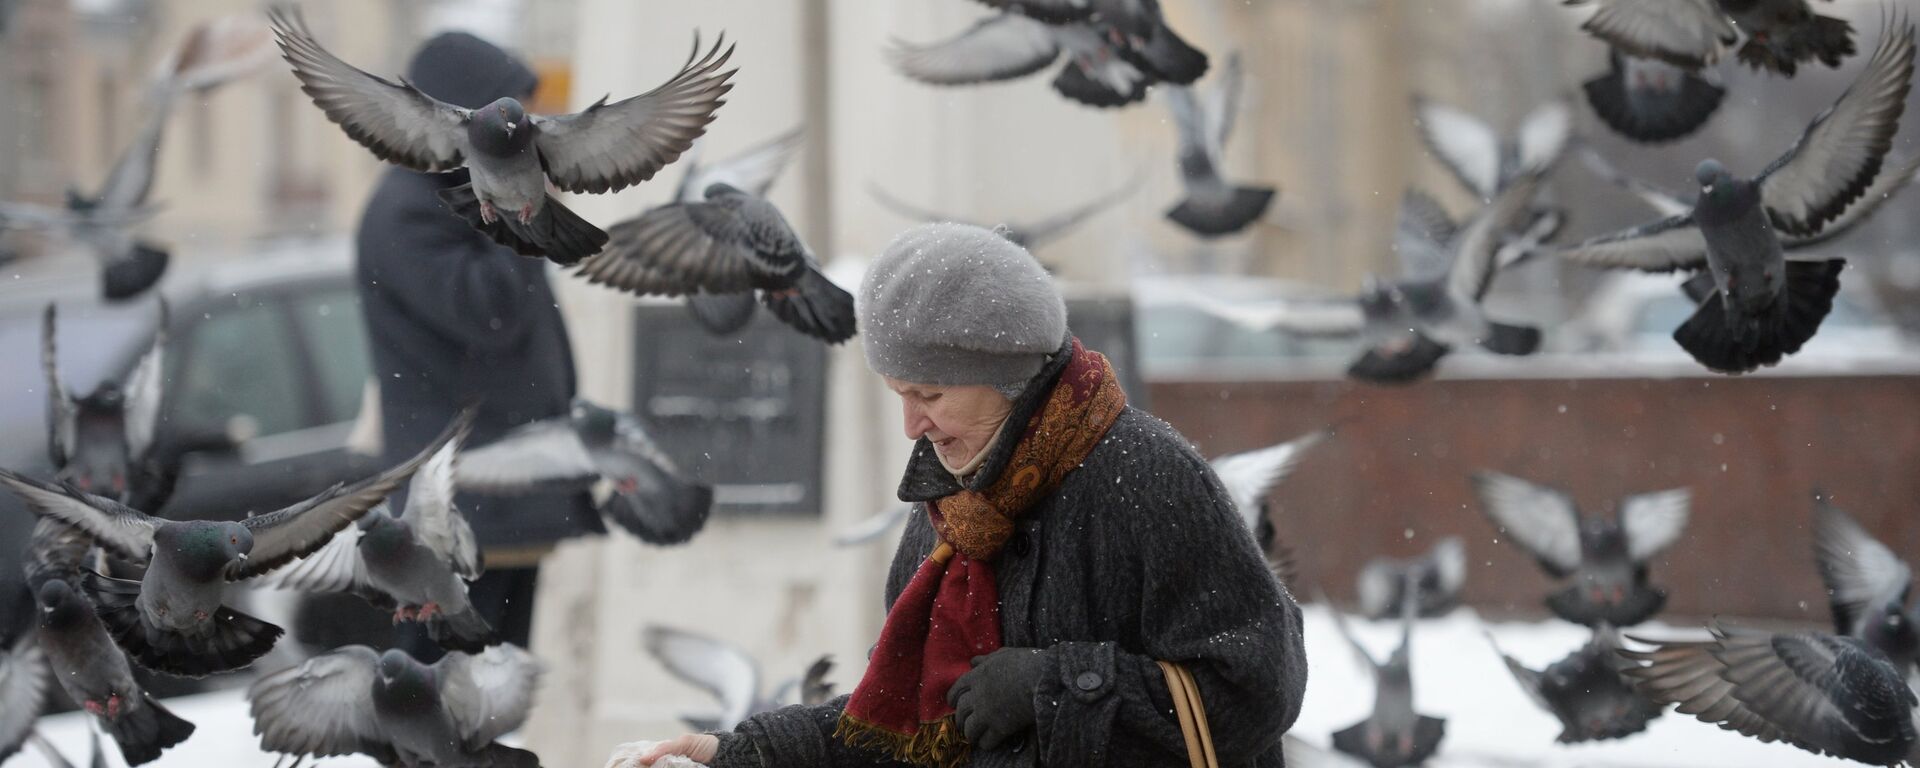 Женщина кормит голубей - Sputnik Латвия, 1920, 23.02.2016